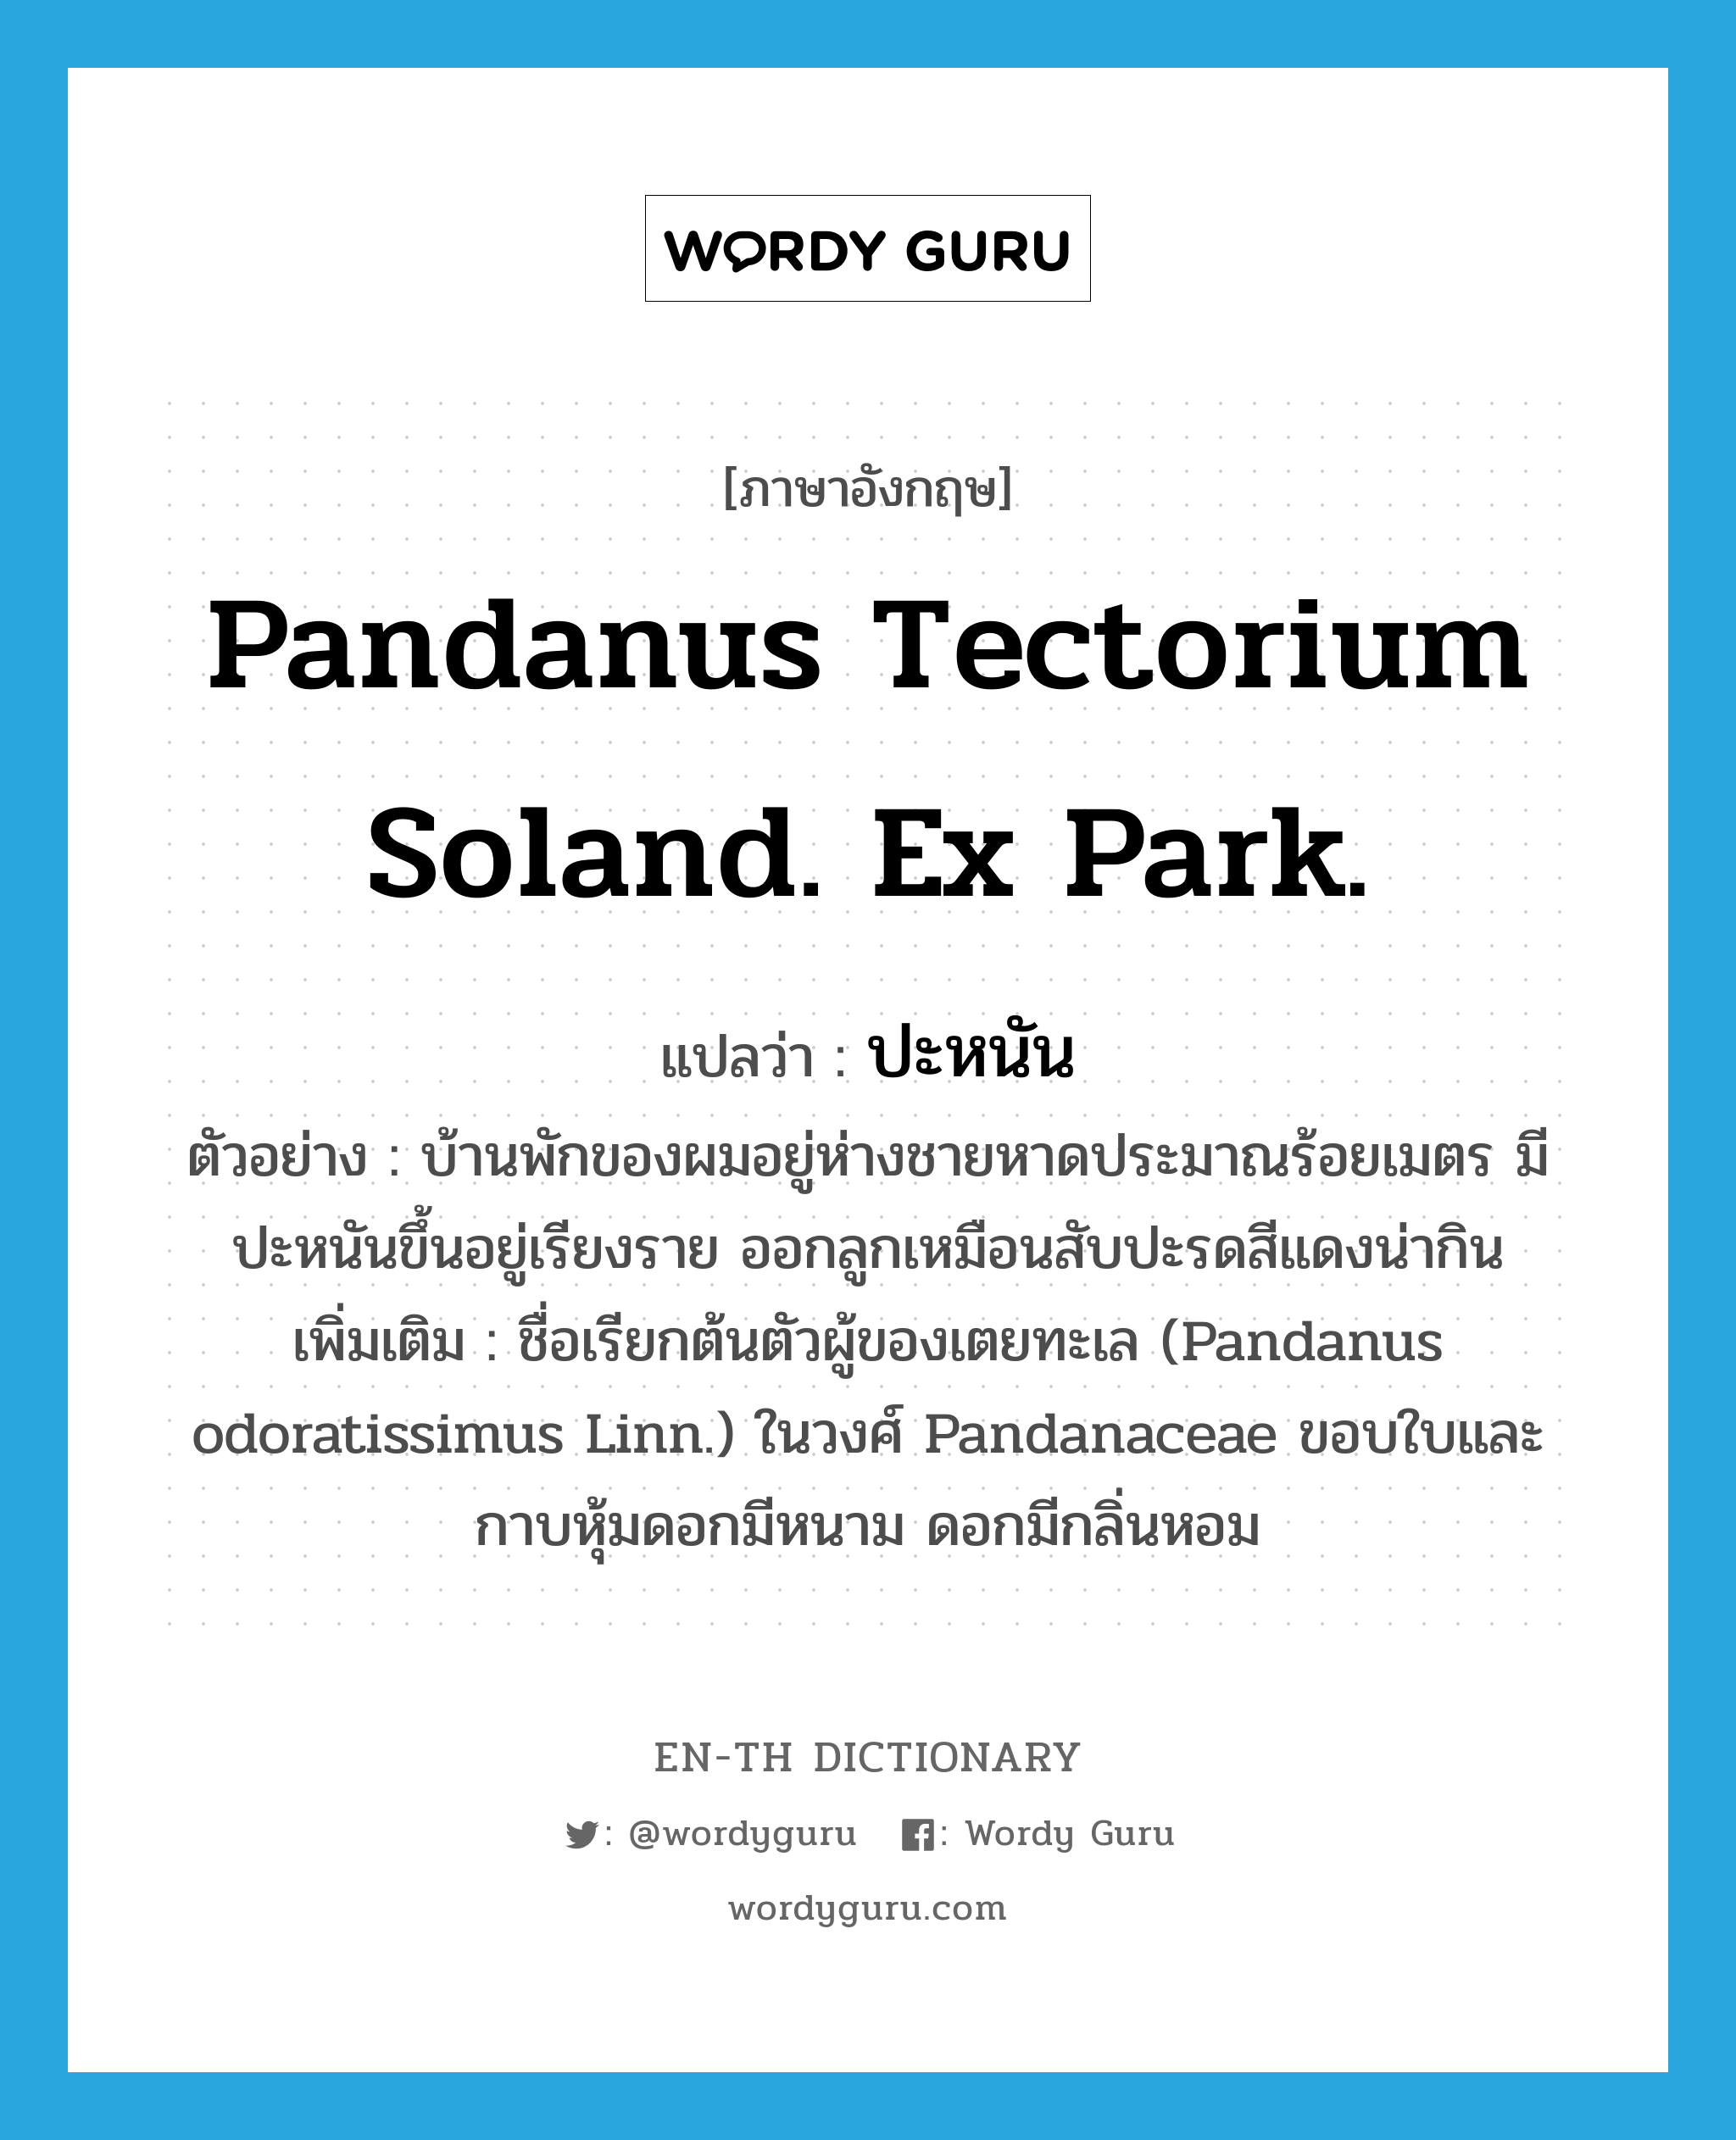 Pandanus tectorium Soland. Ex Park. แปลว่า?, คำศัพท์ภาษาอังกฤษ Pandanus tectorium Soland. Ex Park. แปลว่า ปะหนัน ประเภท N ตัวอย่าง บ้านพักของผมอยู่ห่างชายหาดประมาณร้อยเมตร มีปะหนันขึ้นอยู่เรียงราย ออกลูกเหมือนสับปะรดสีแดงน่ากิน เพิ่มเติม ชื่อเรียกต้นตัวผู้ของเตยทะเล (Pandanus odoratissimus Linn.) ในวงศ์ Pandanaceae ขอบใบและกาบหุ้มดอกมีหนาม ดอกมีกลิ่นหอม หมวด N